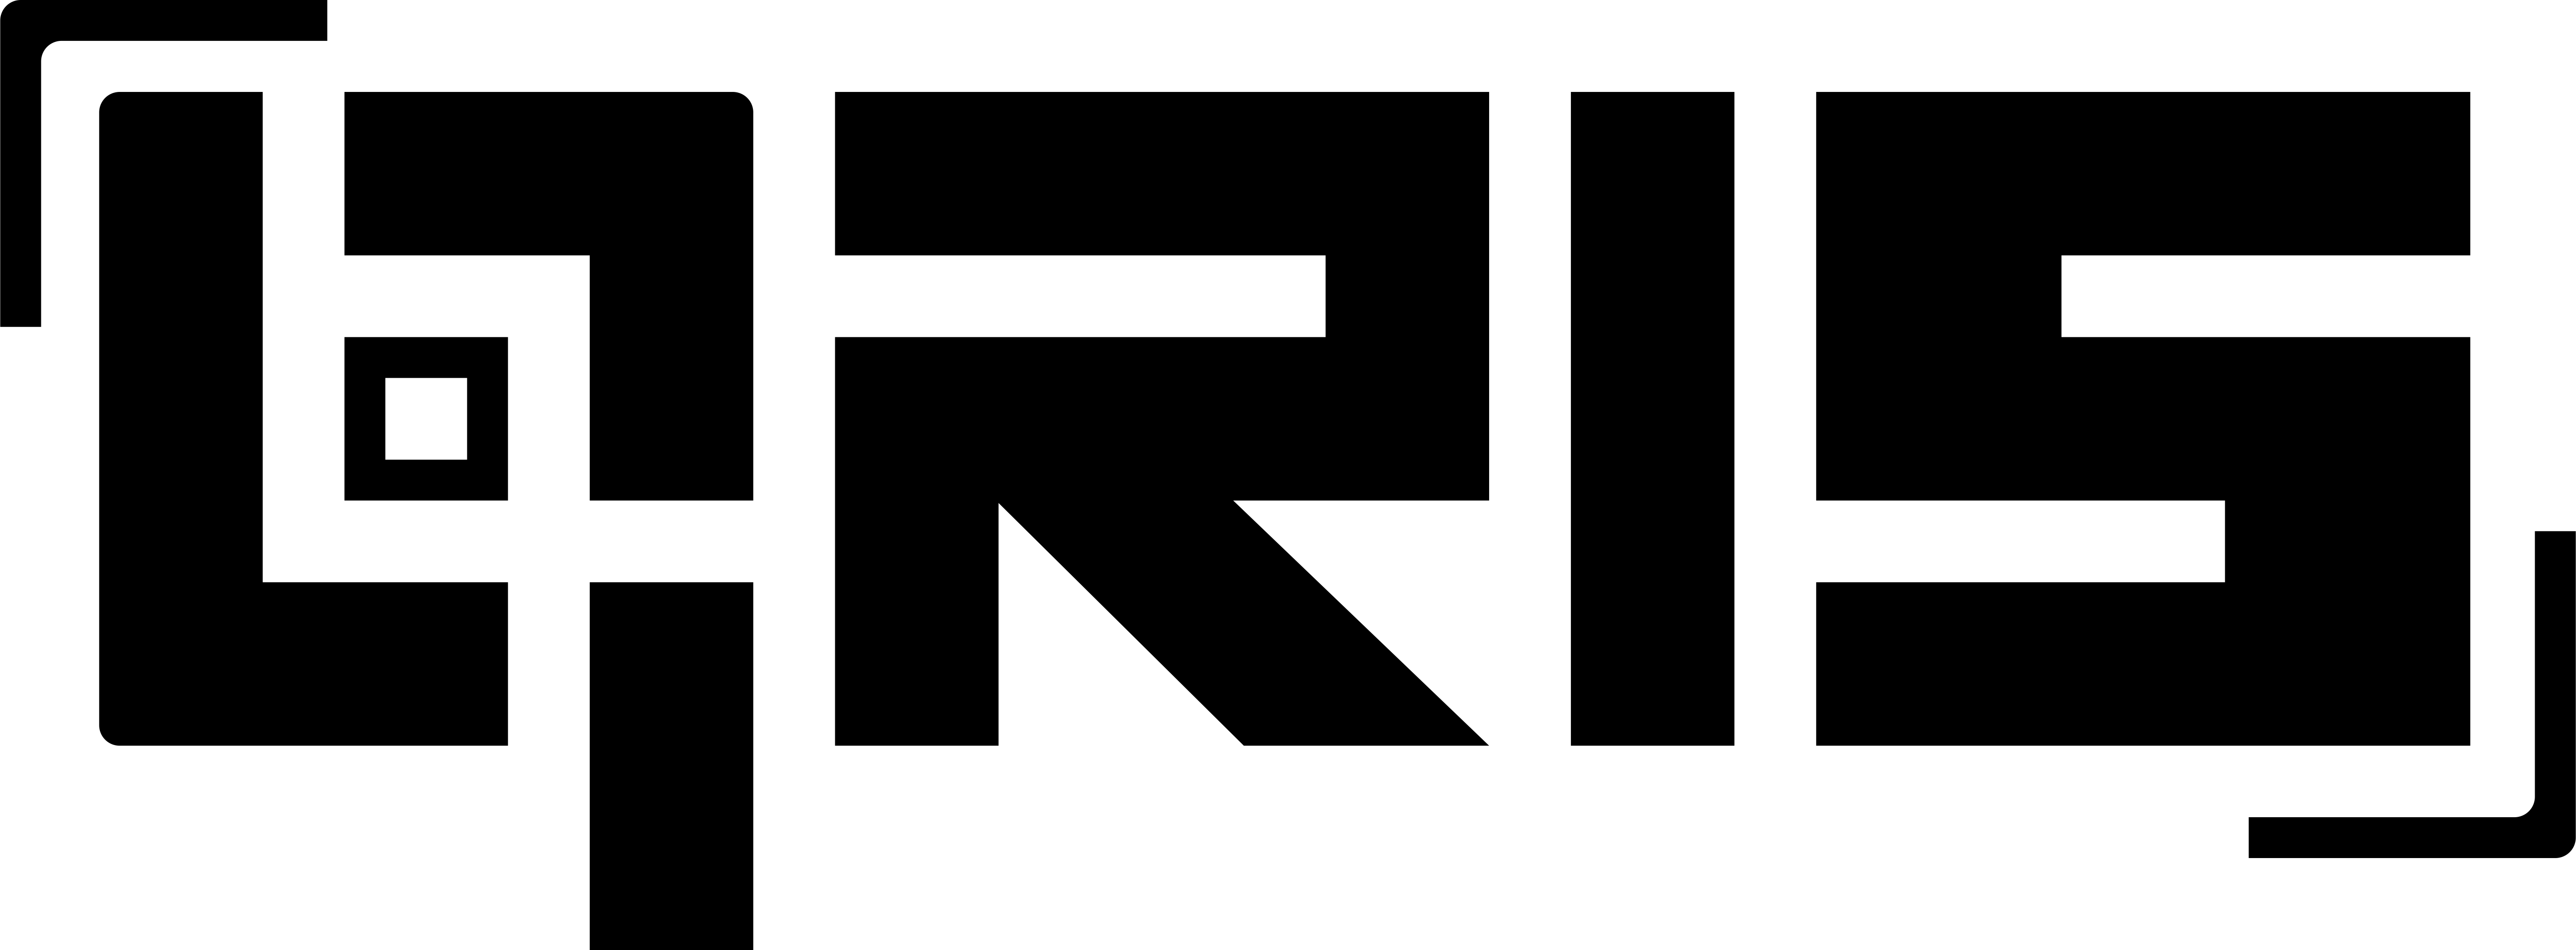 Id5462666. QR С логотипом. Qris logo. EKASSIR лого. GAISF лого.